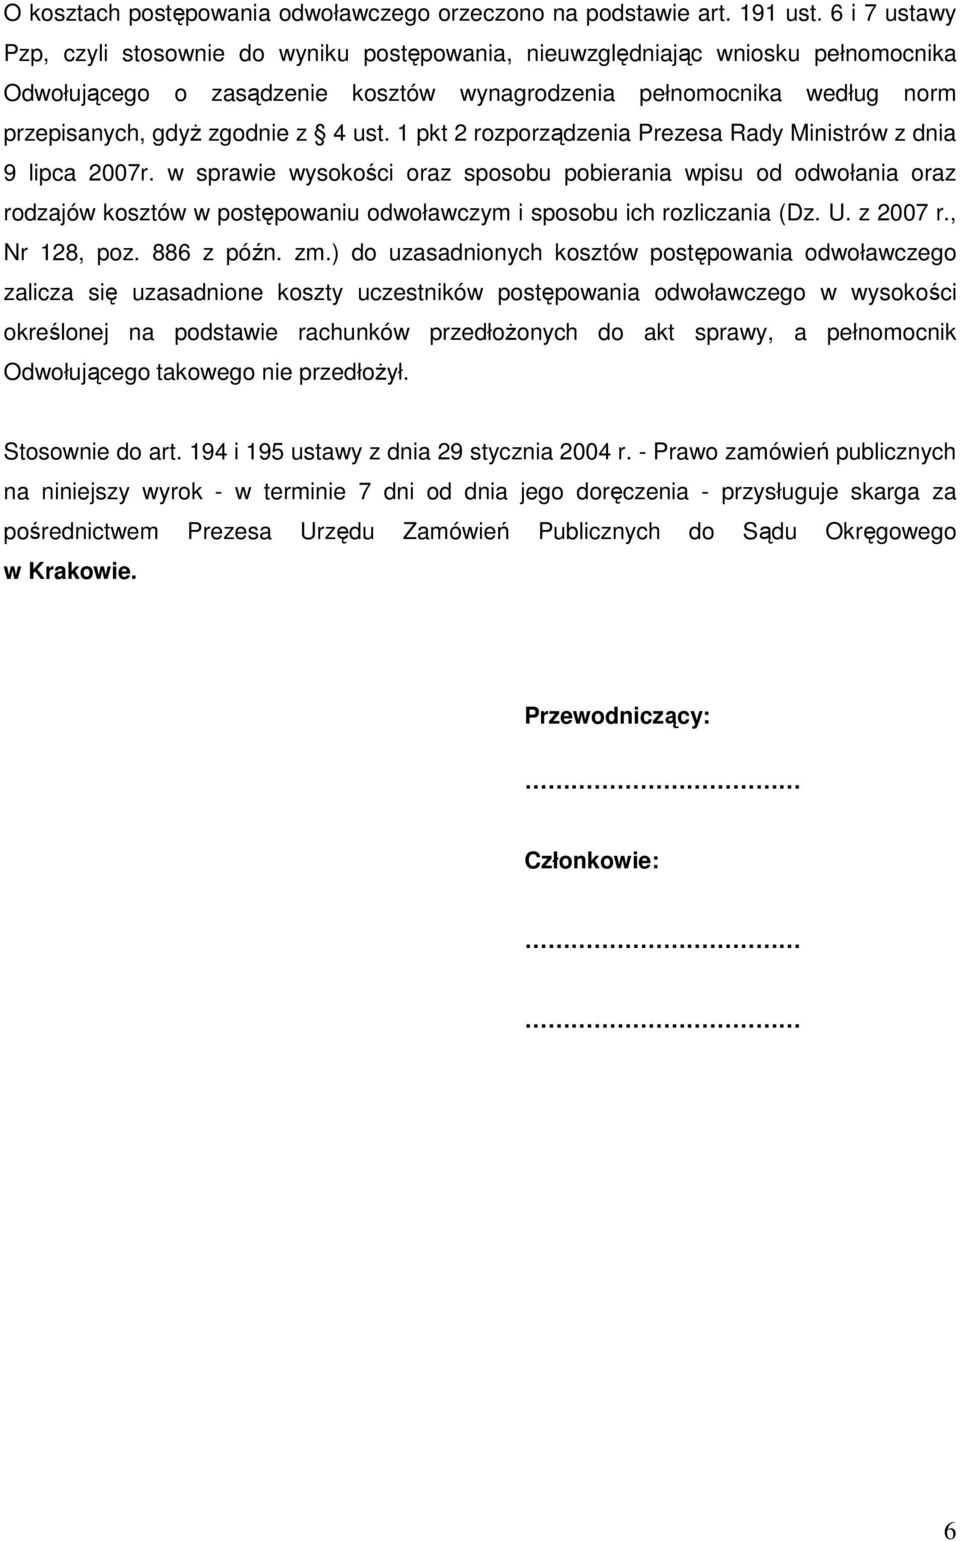 ust. 1 pkt 2 rozporządzenia Prezesa Rady Ministrów z dnia 9 lipca 2007r.